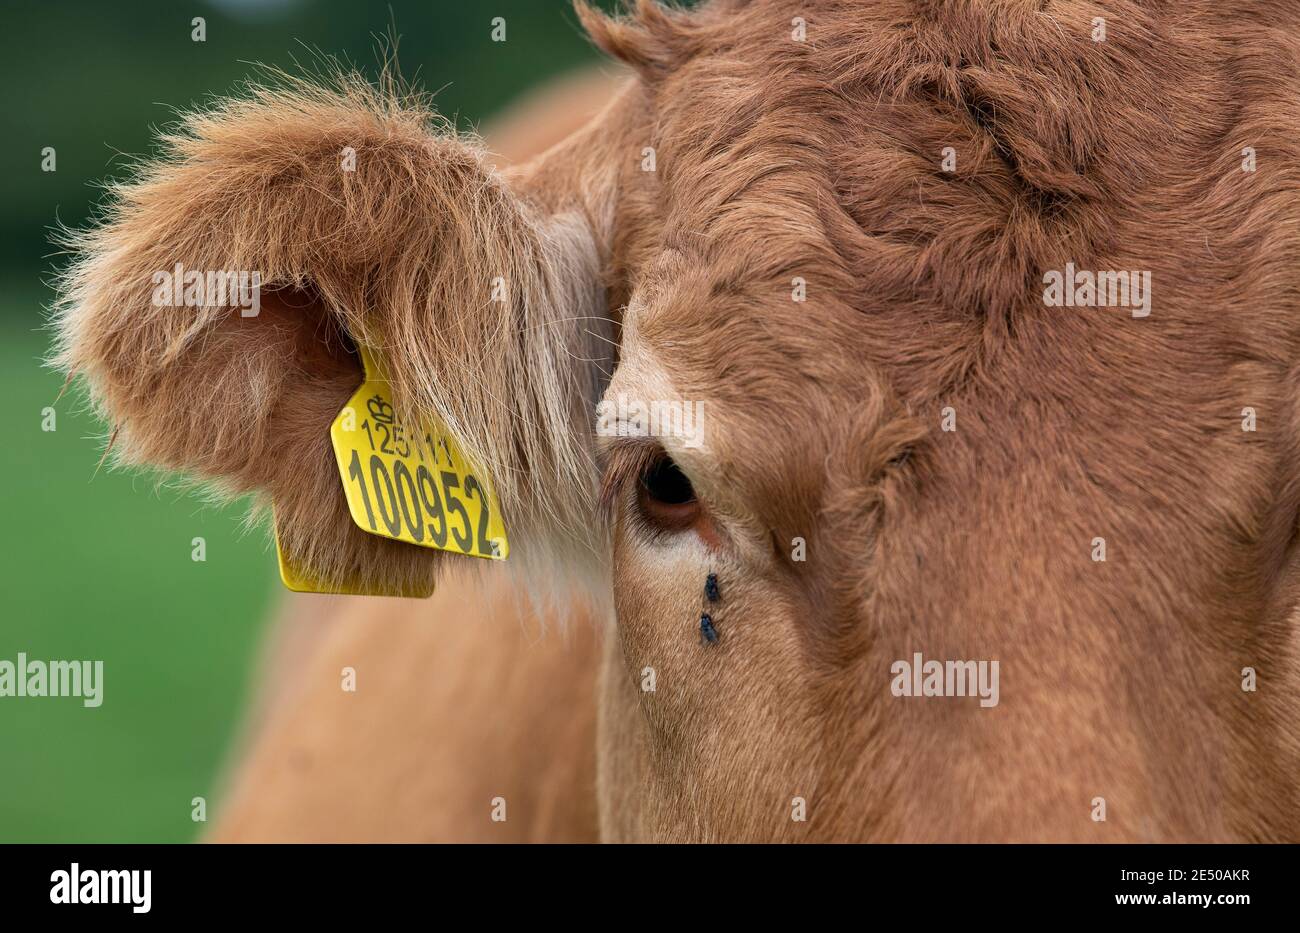 Primo piano di un occhio e orecchio di vacche di manzo limousin, che mostra il numero di etichetta auricolare per l'identificazione. North Yorkshire, Regno Unito. Foto Stock